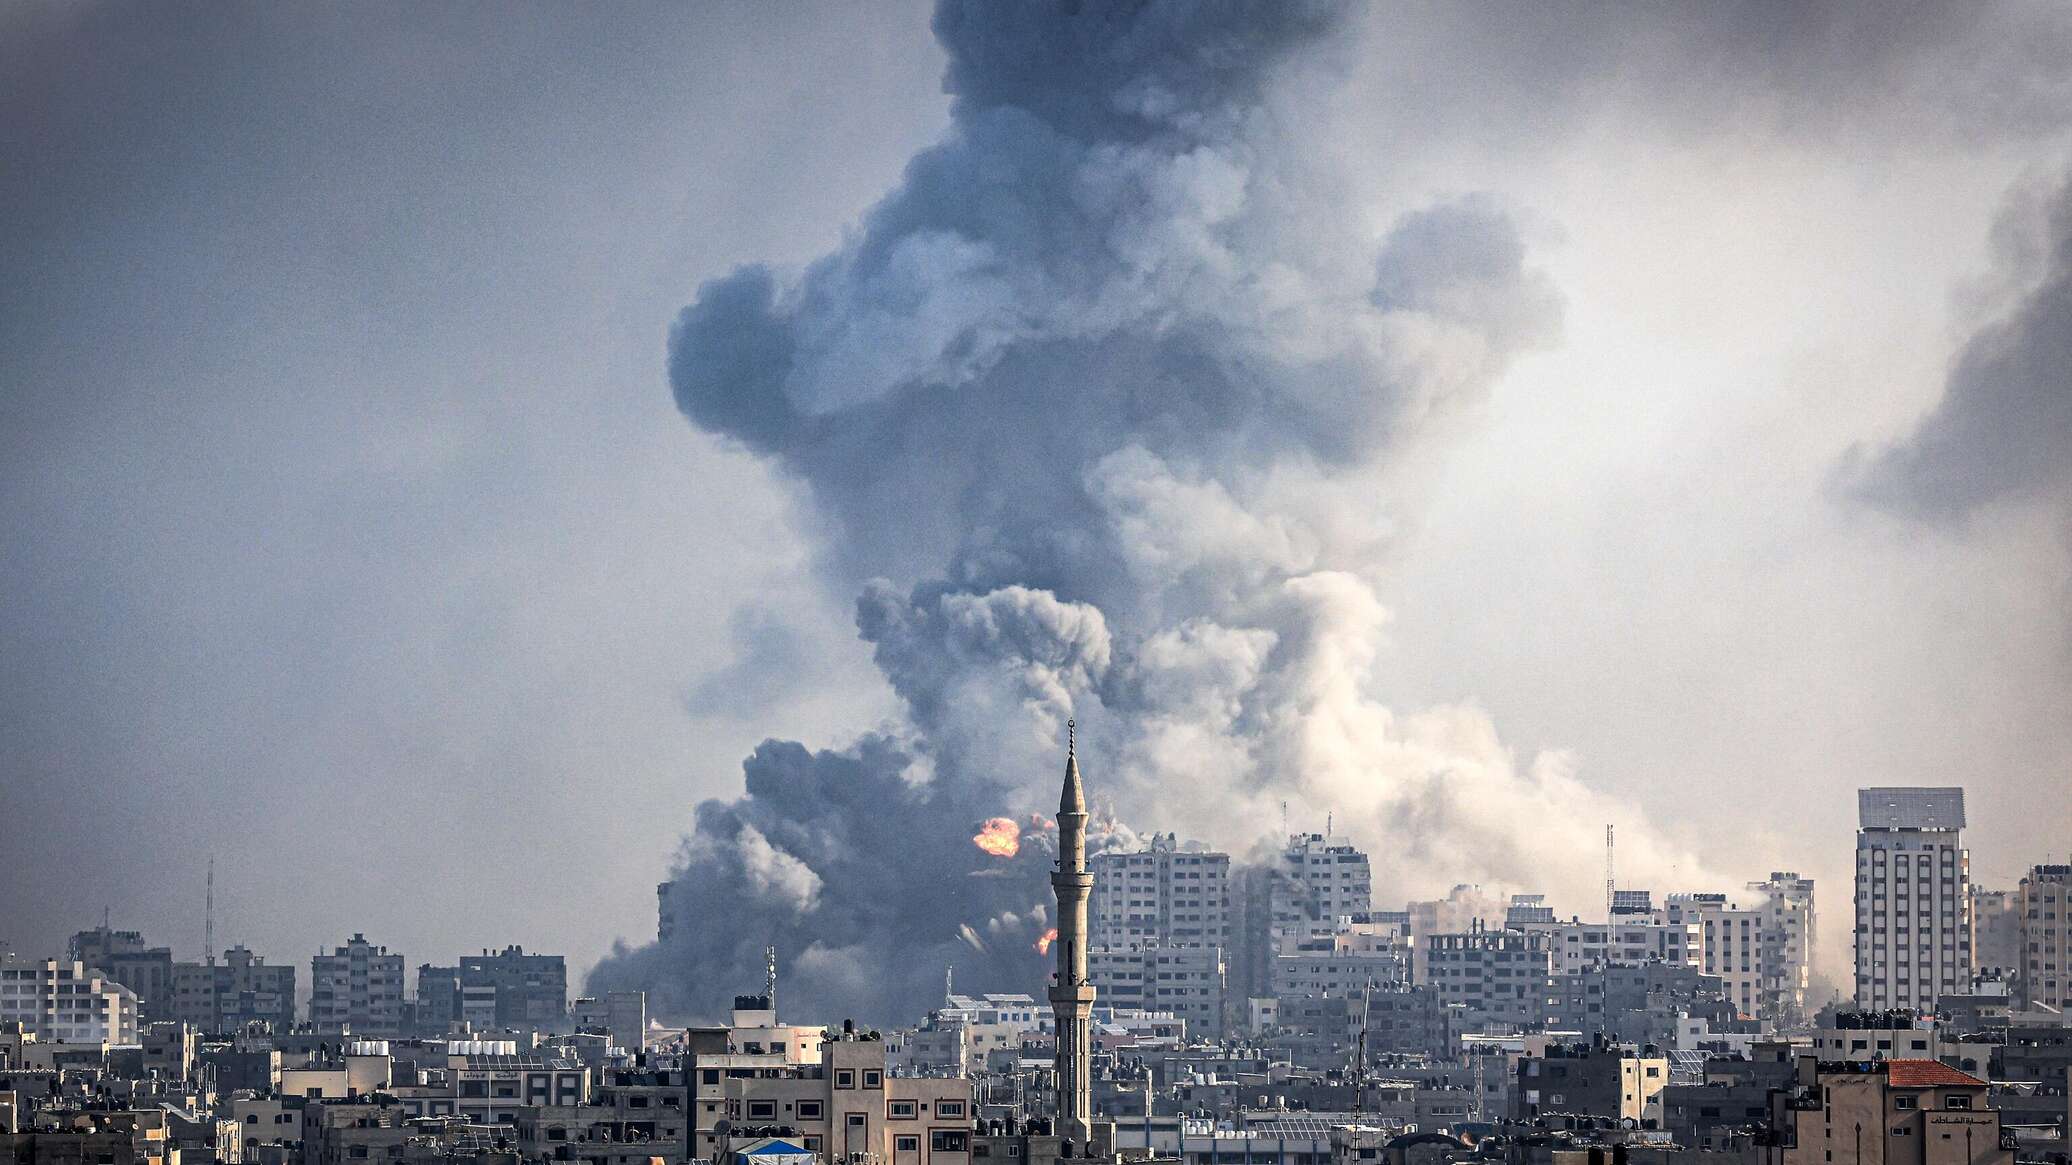 باحث متخصص يكشف عن سلاح تستخدمه "حماس" قد يسبب "ضربة مؤلمة"...فيديو